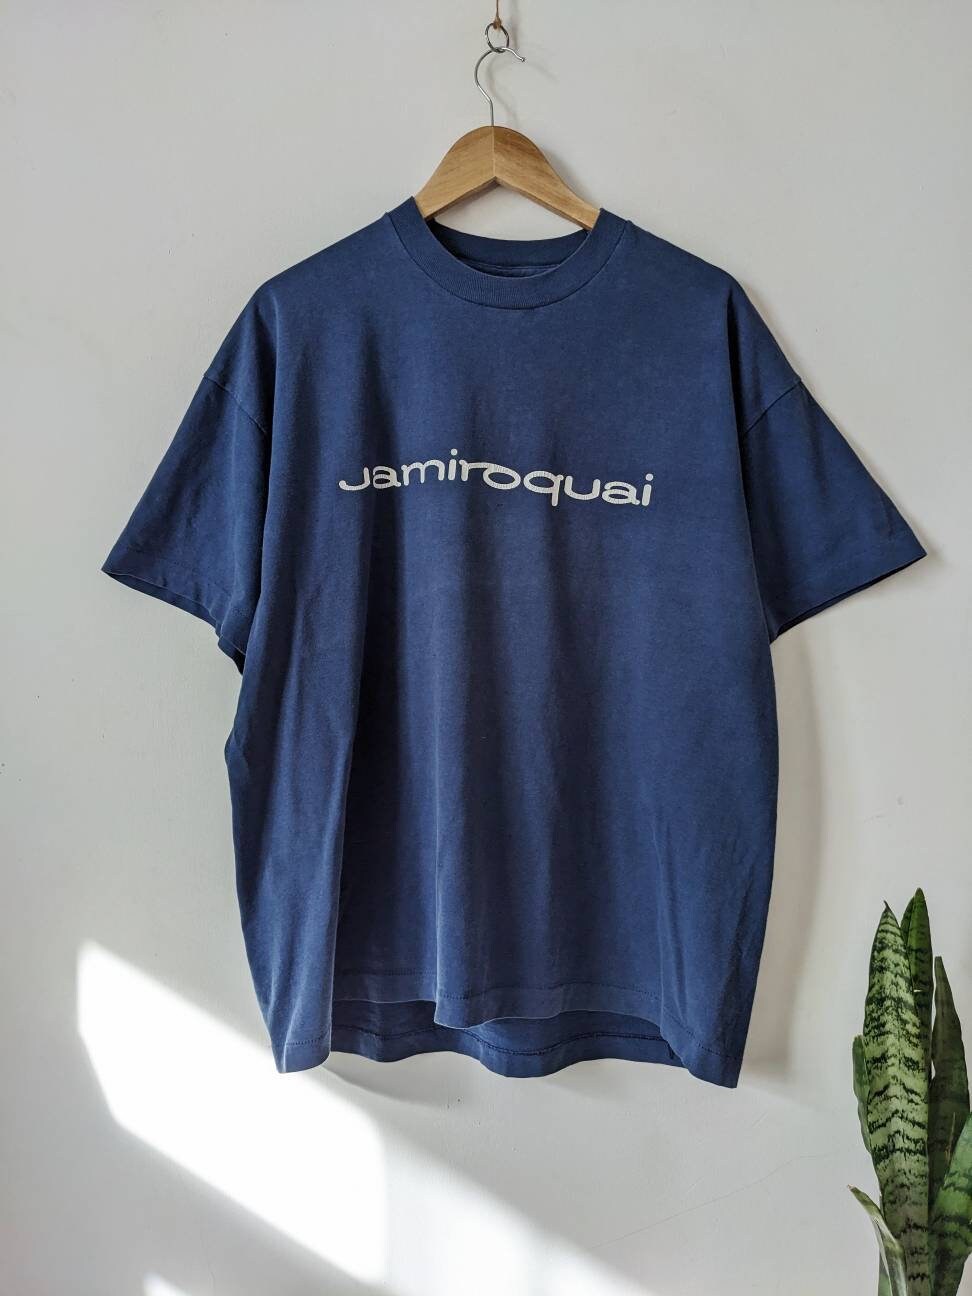 ジャミロク ワイ メンズ レディース Tシャツ 両面プリント ジャミロクワイ Jamiroquai コンサート バンドはPrinterval